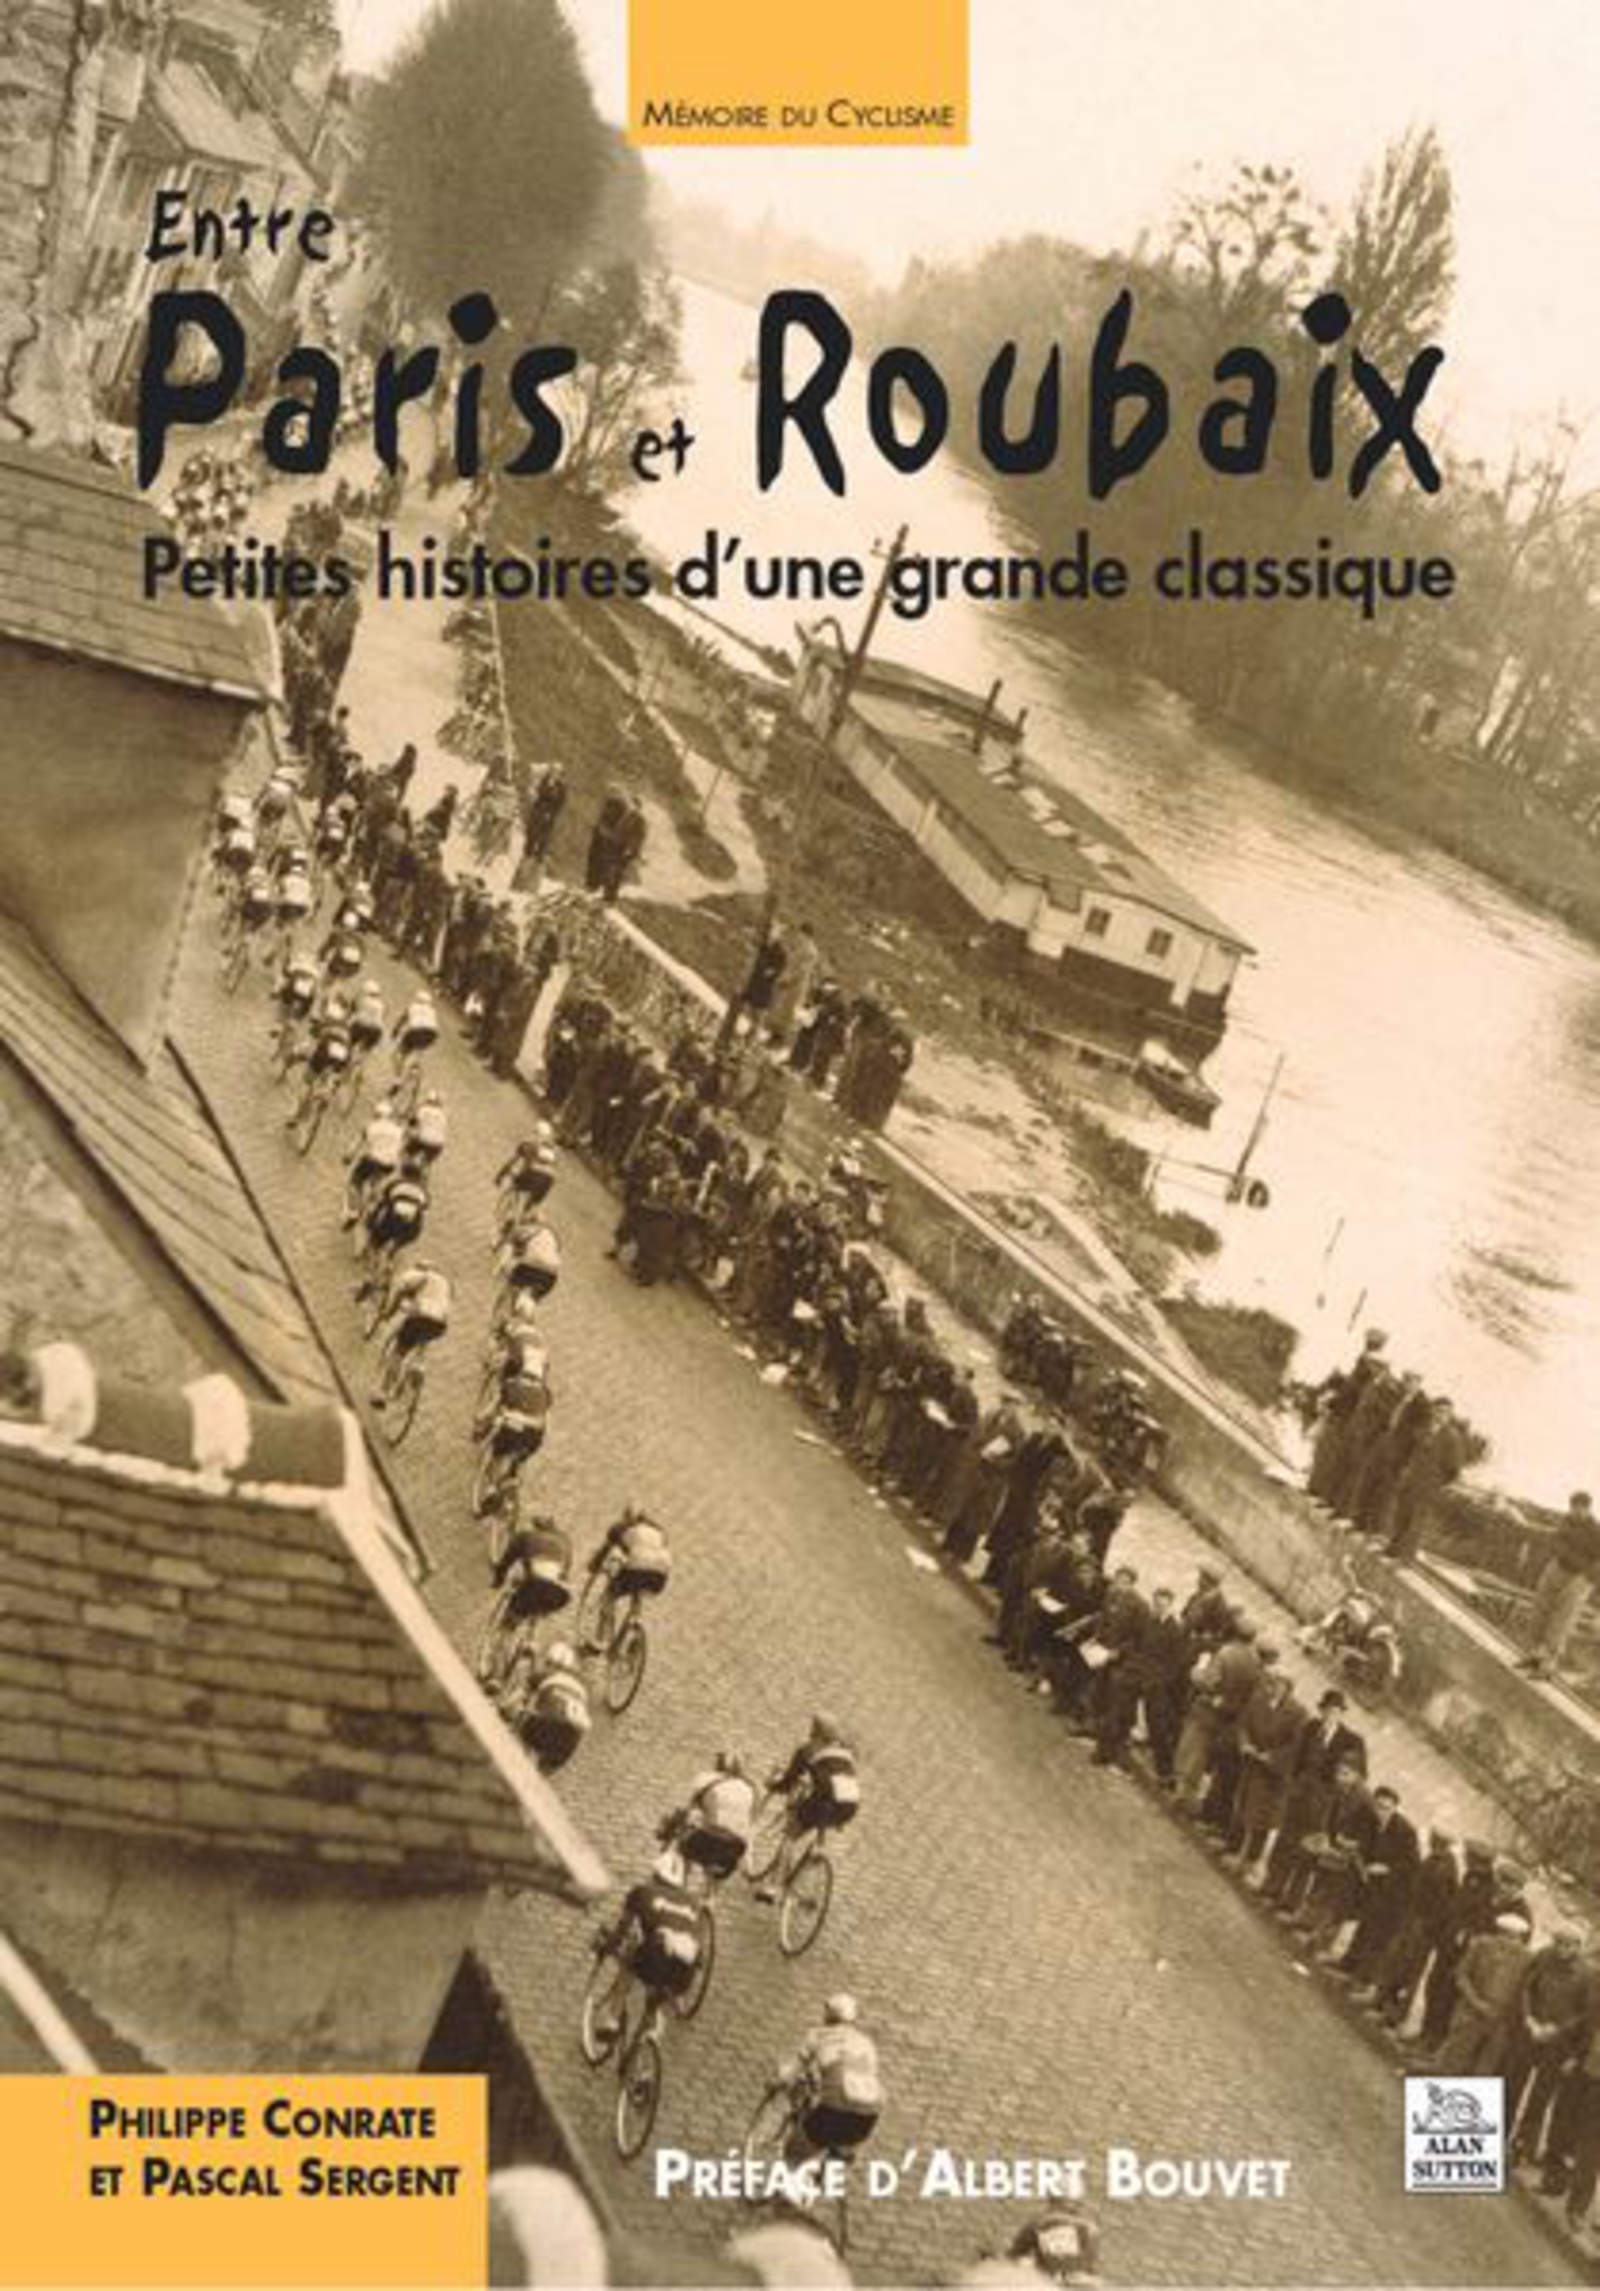 Paris et Roubaix (Entre) - Philippe Conrate, Pascal Sergent